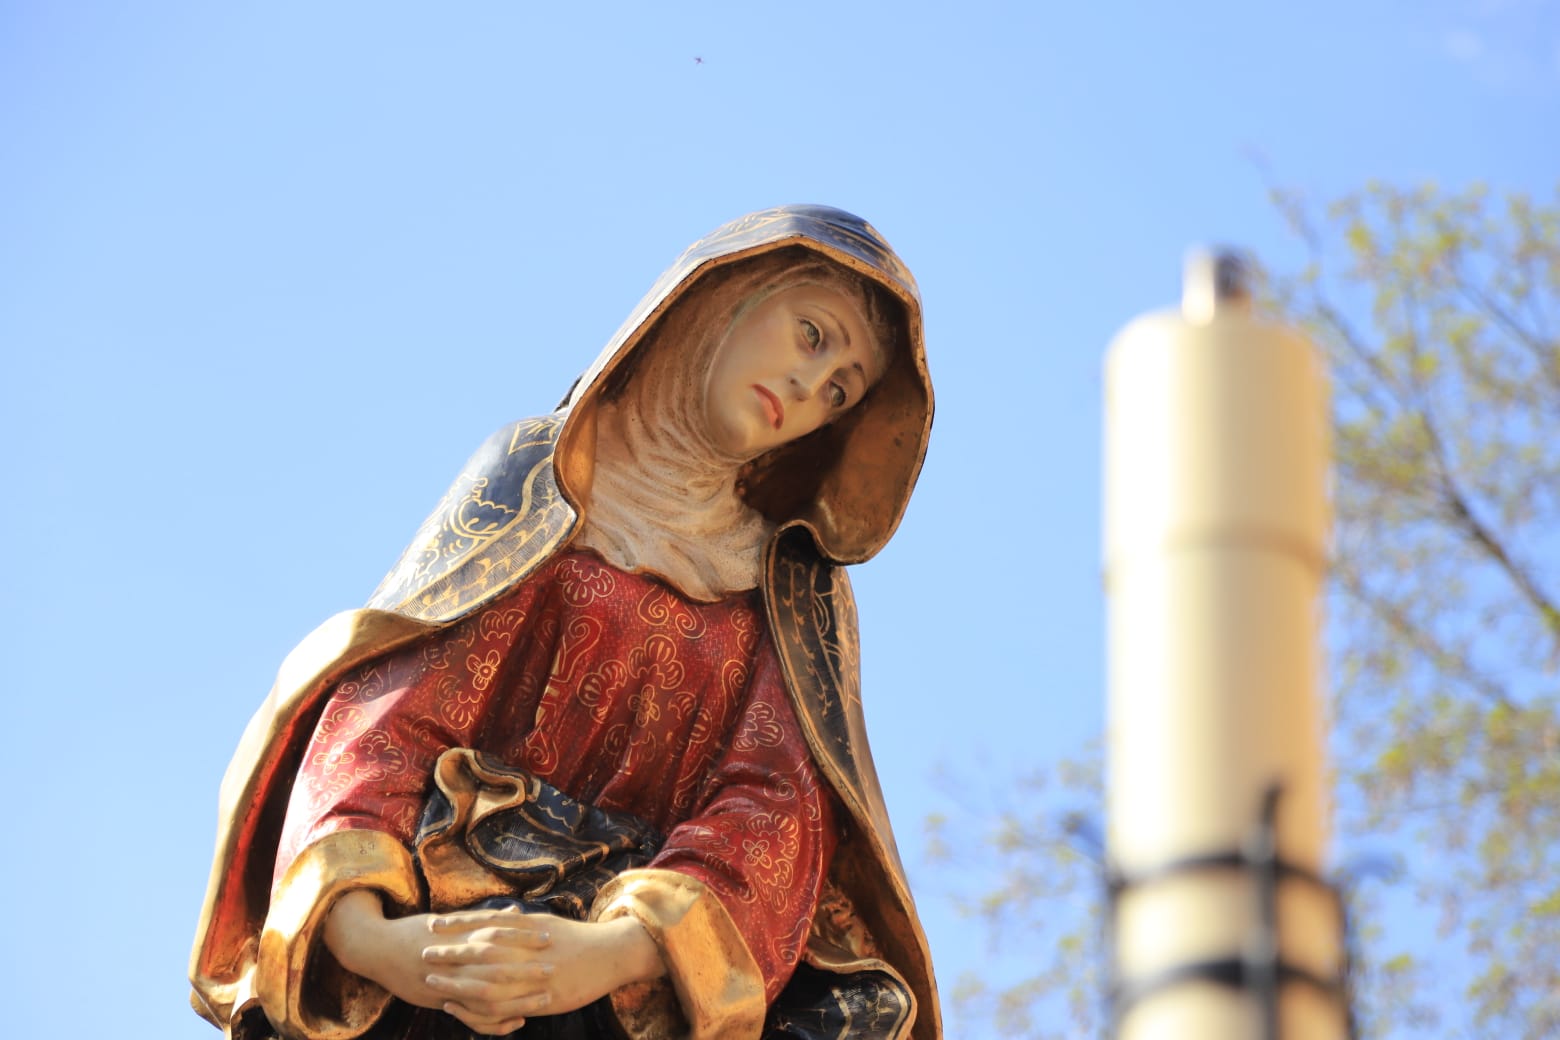 Los cofrades portaron dos imágenes, el Cristo de la Vela, cuyo autor se desconoce y que data del año 1920, y Nuestra Señora del Silencio, una talla de Enrique Orejudo esculpida en el año 1990